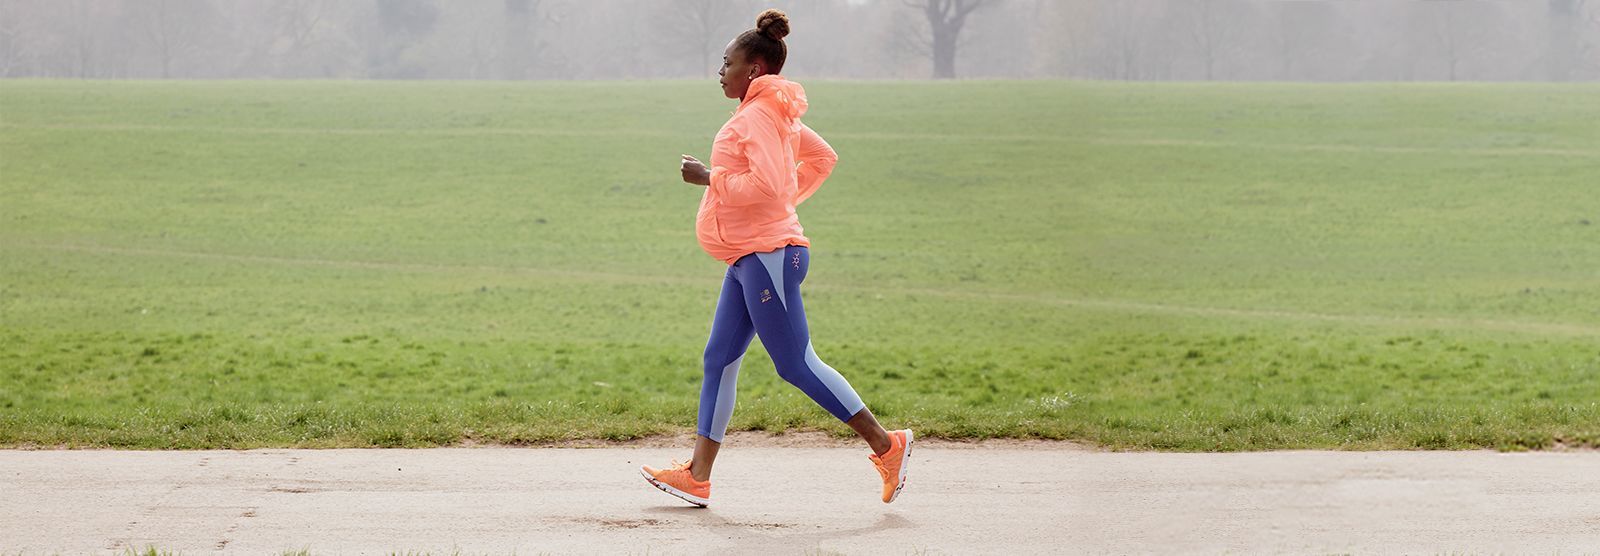 Mudah Dilakukan Bikin Bugar, Bolehkah Olahraga Lari saat Hamil